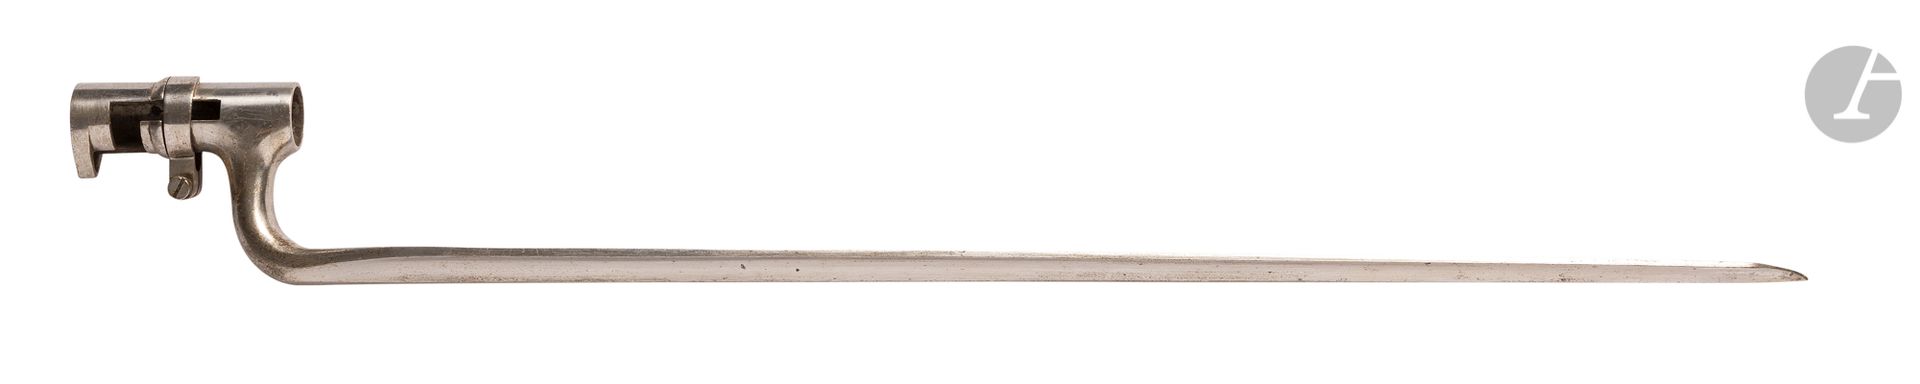 Null 
Bayoneta de zócalo
USA 
modelo 1871. 
Enchufe con virola mediana. Hoja tri&hellip;